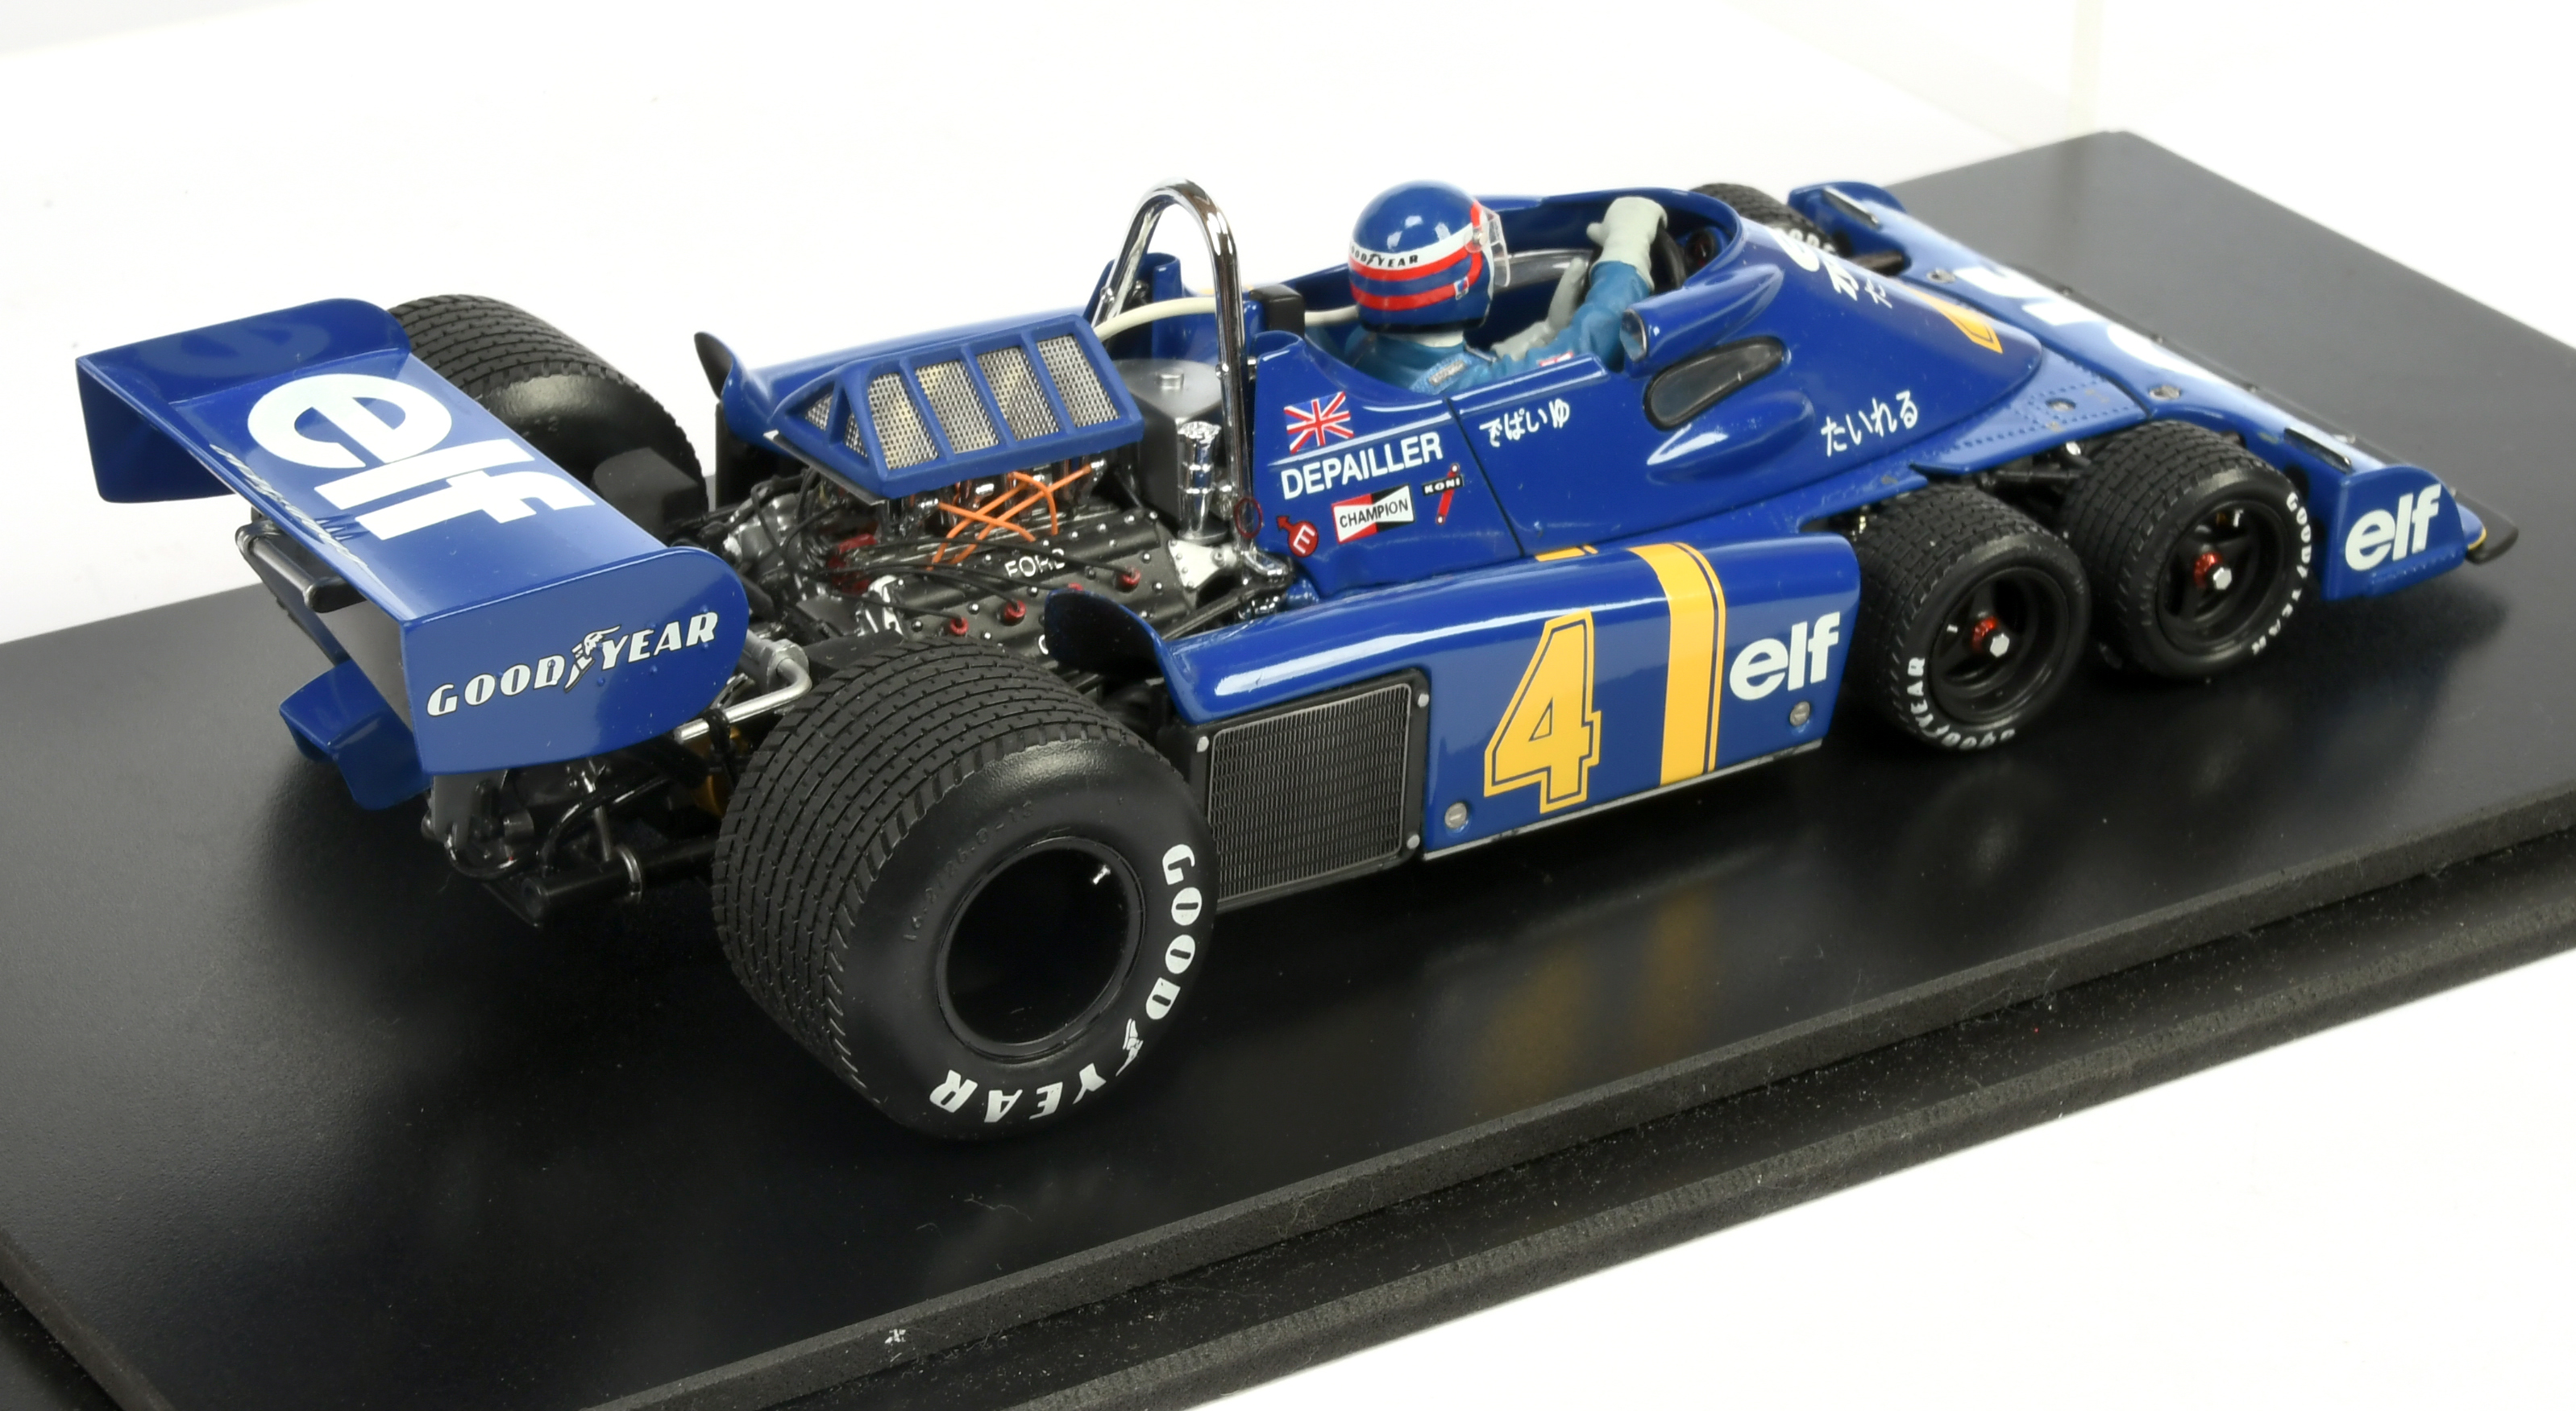 Exoto 1/18 scale model racing car - "Depailler elf Tyrrell" racing number 4 - - Image 2 of 2